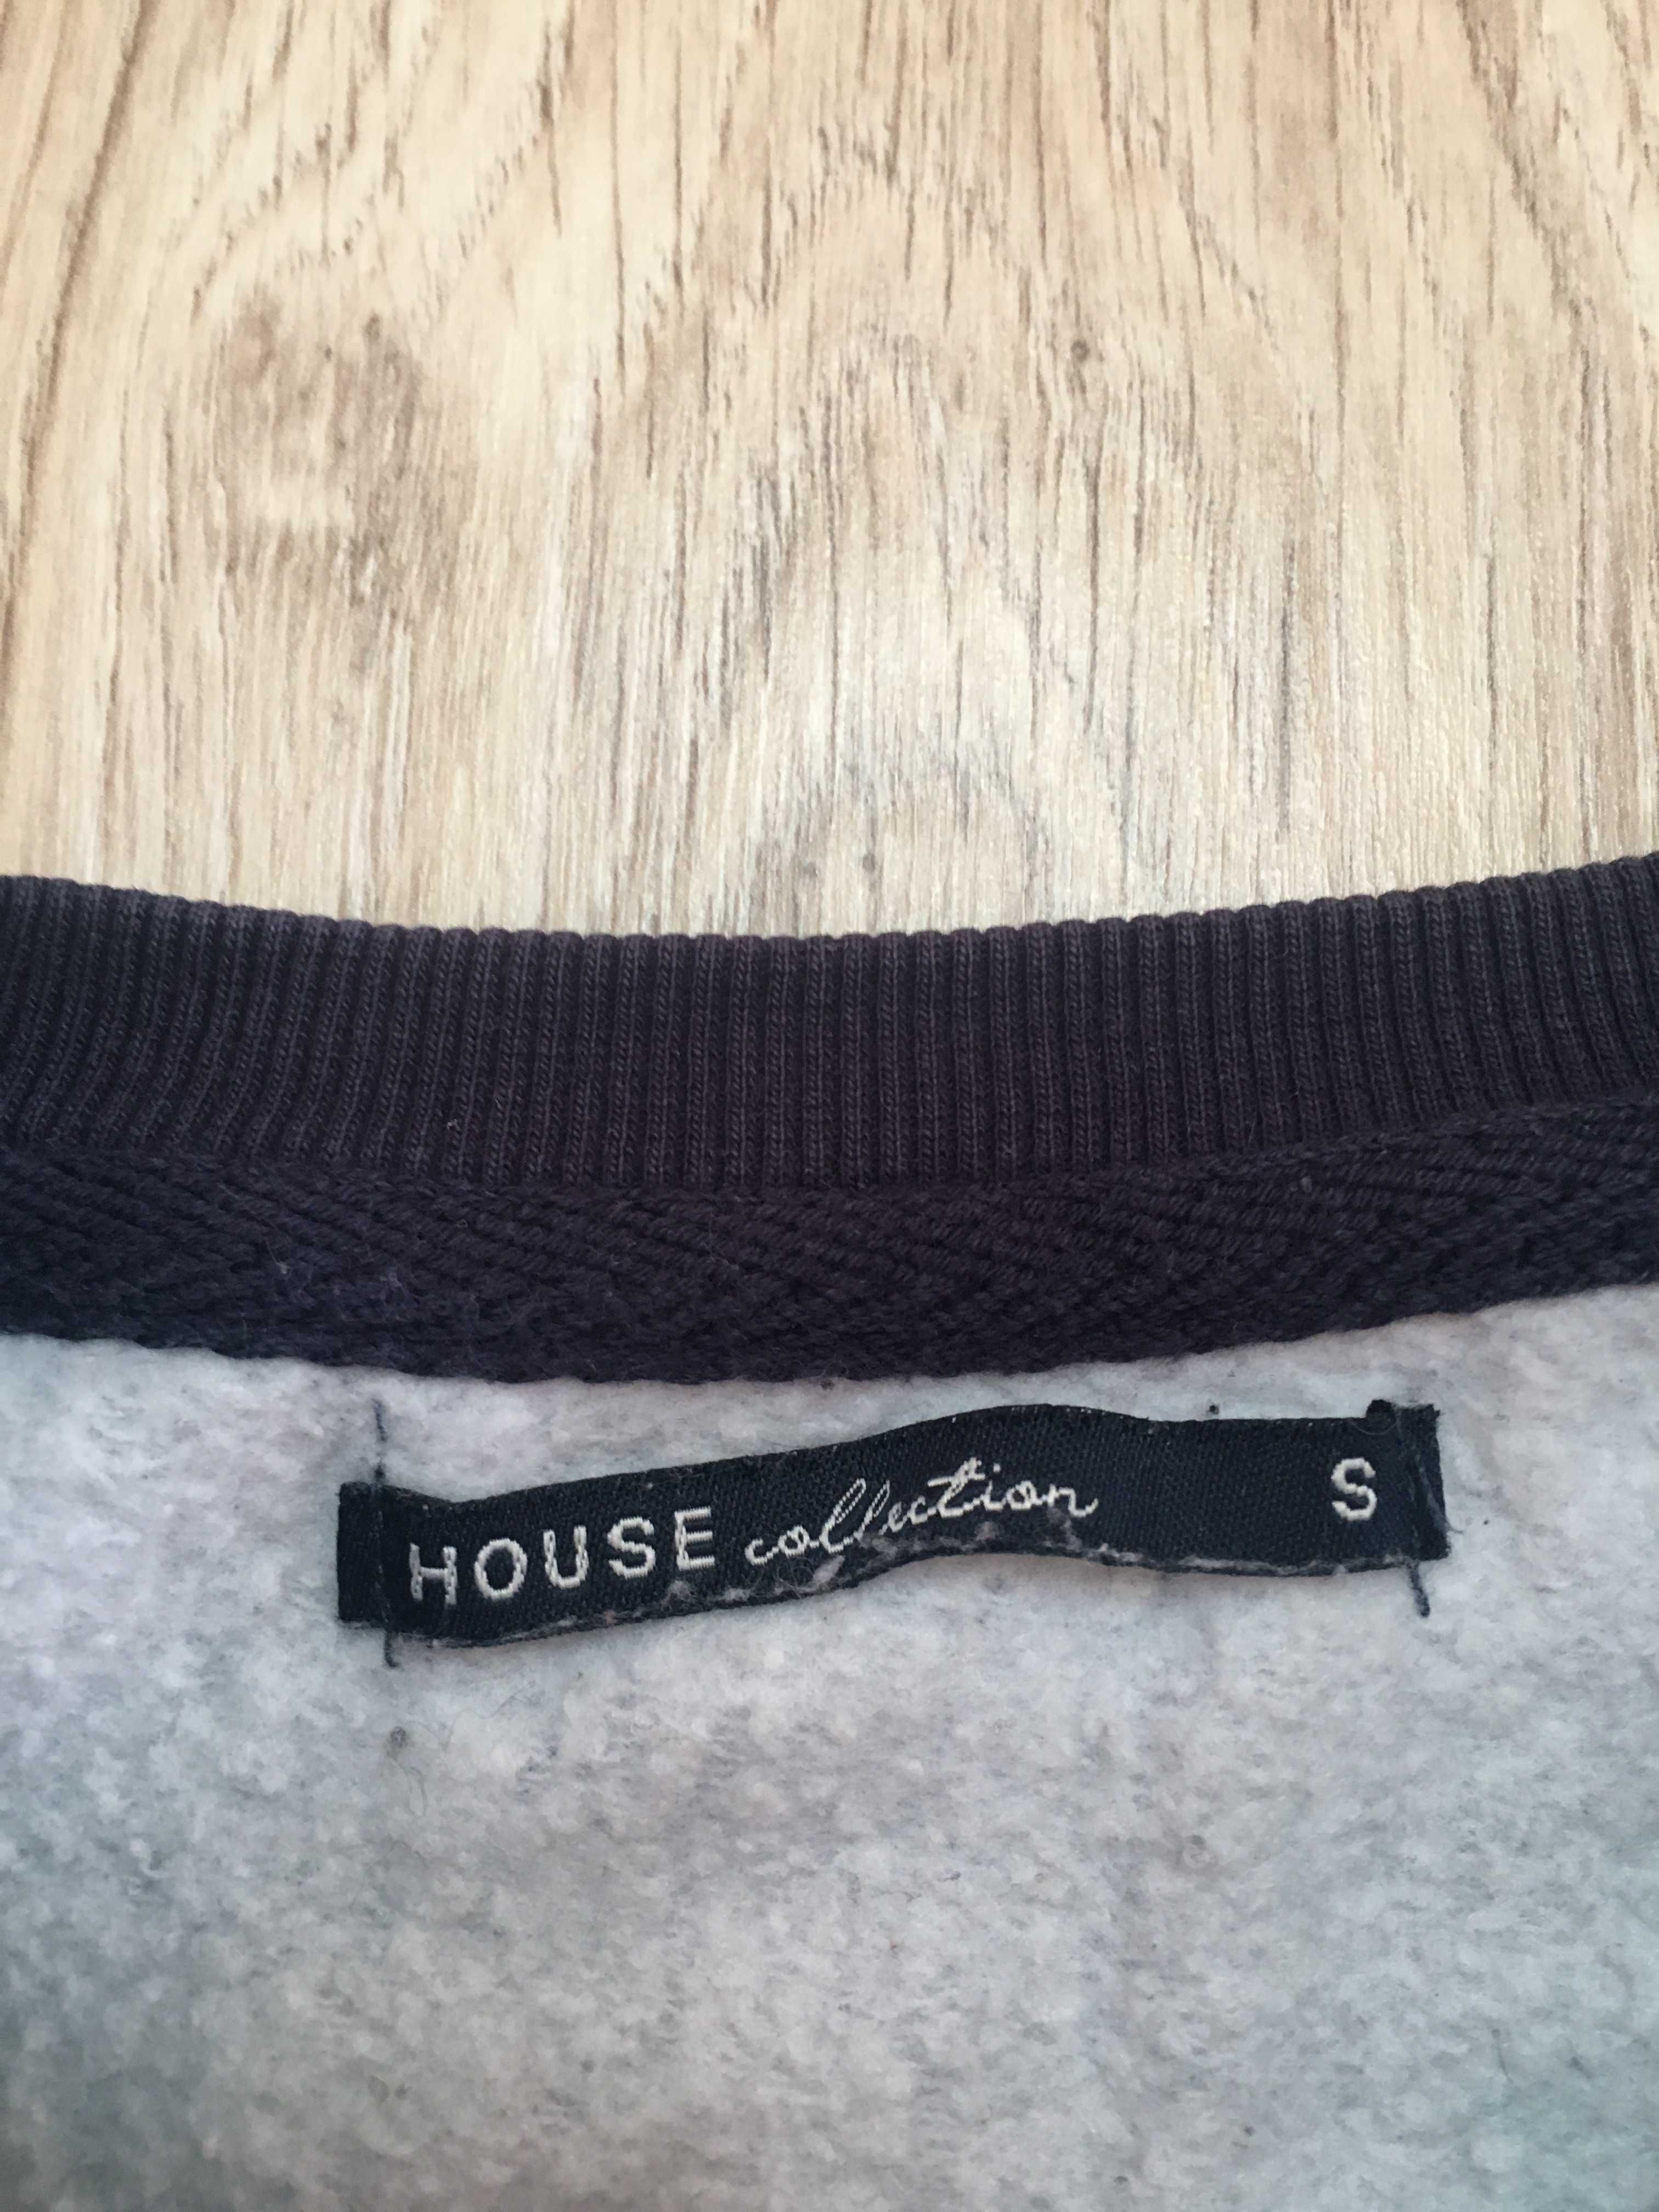 Bluza z długim rękawem, rozmiar S, House